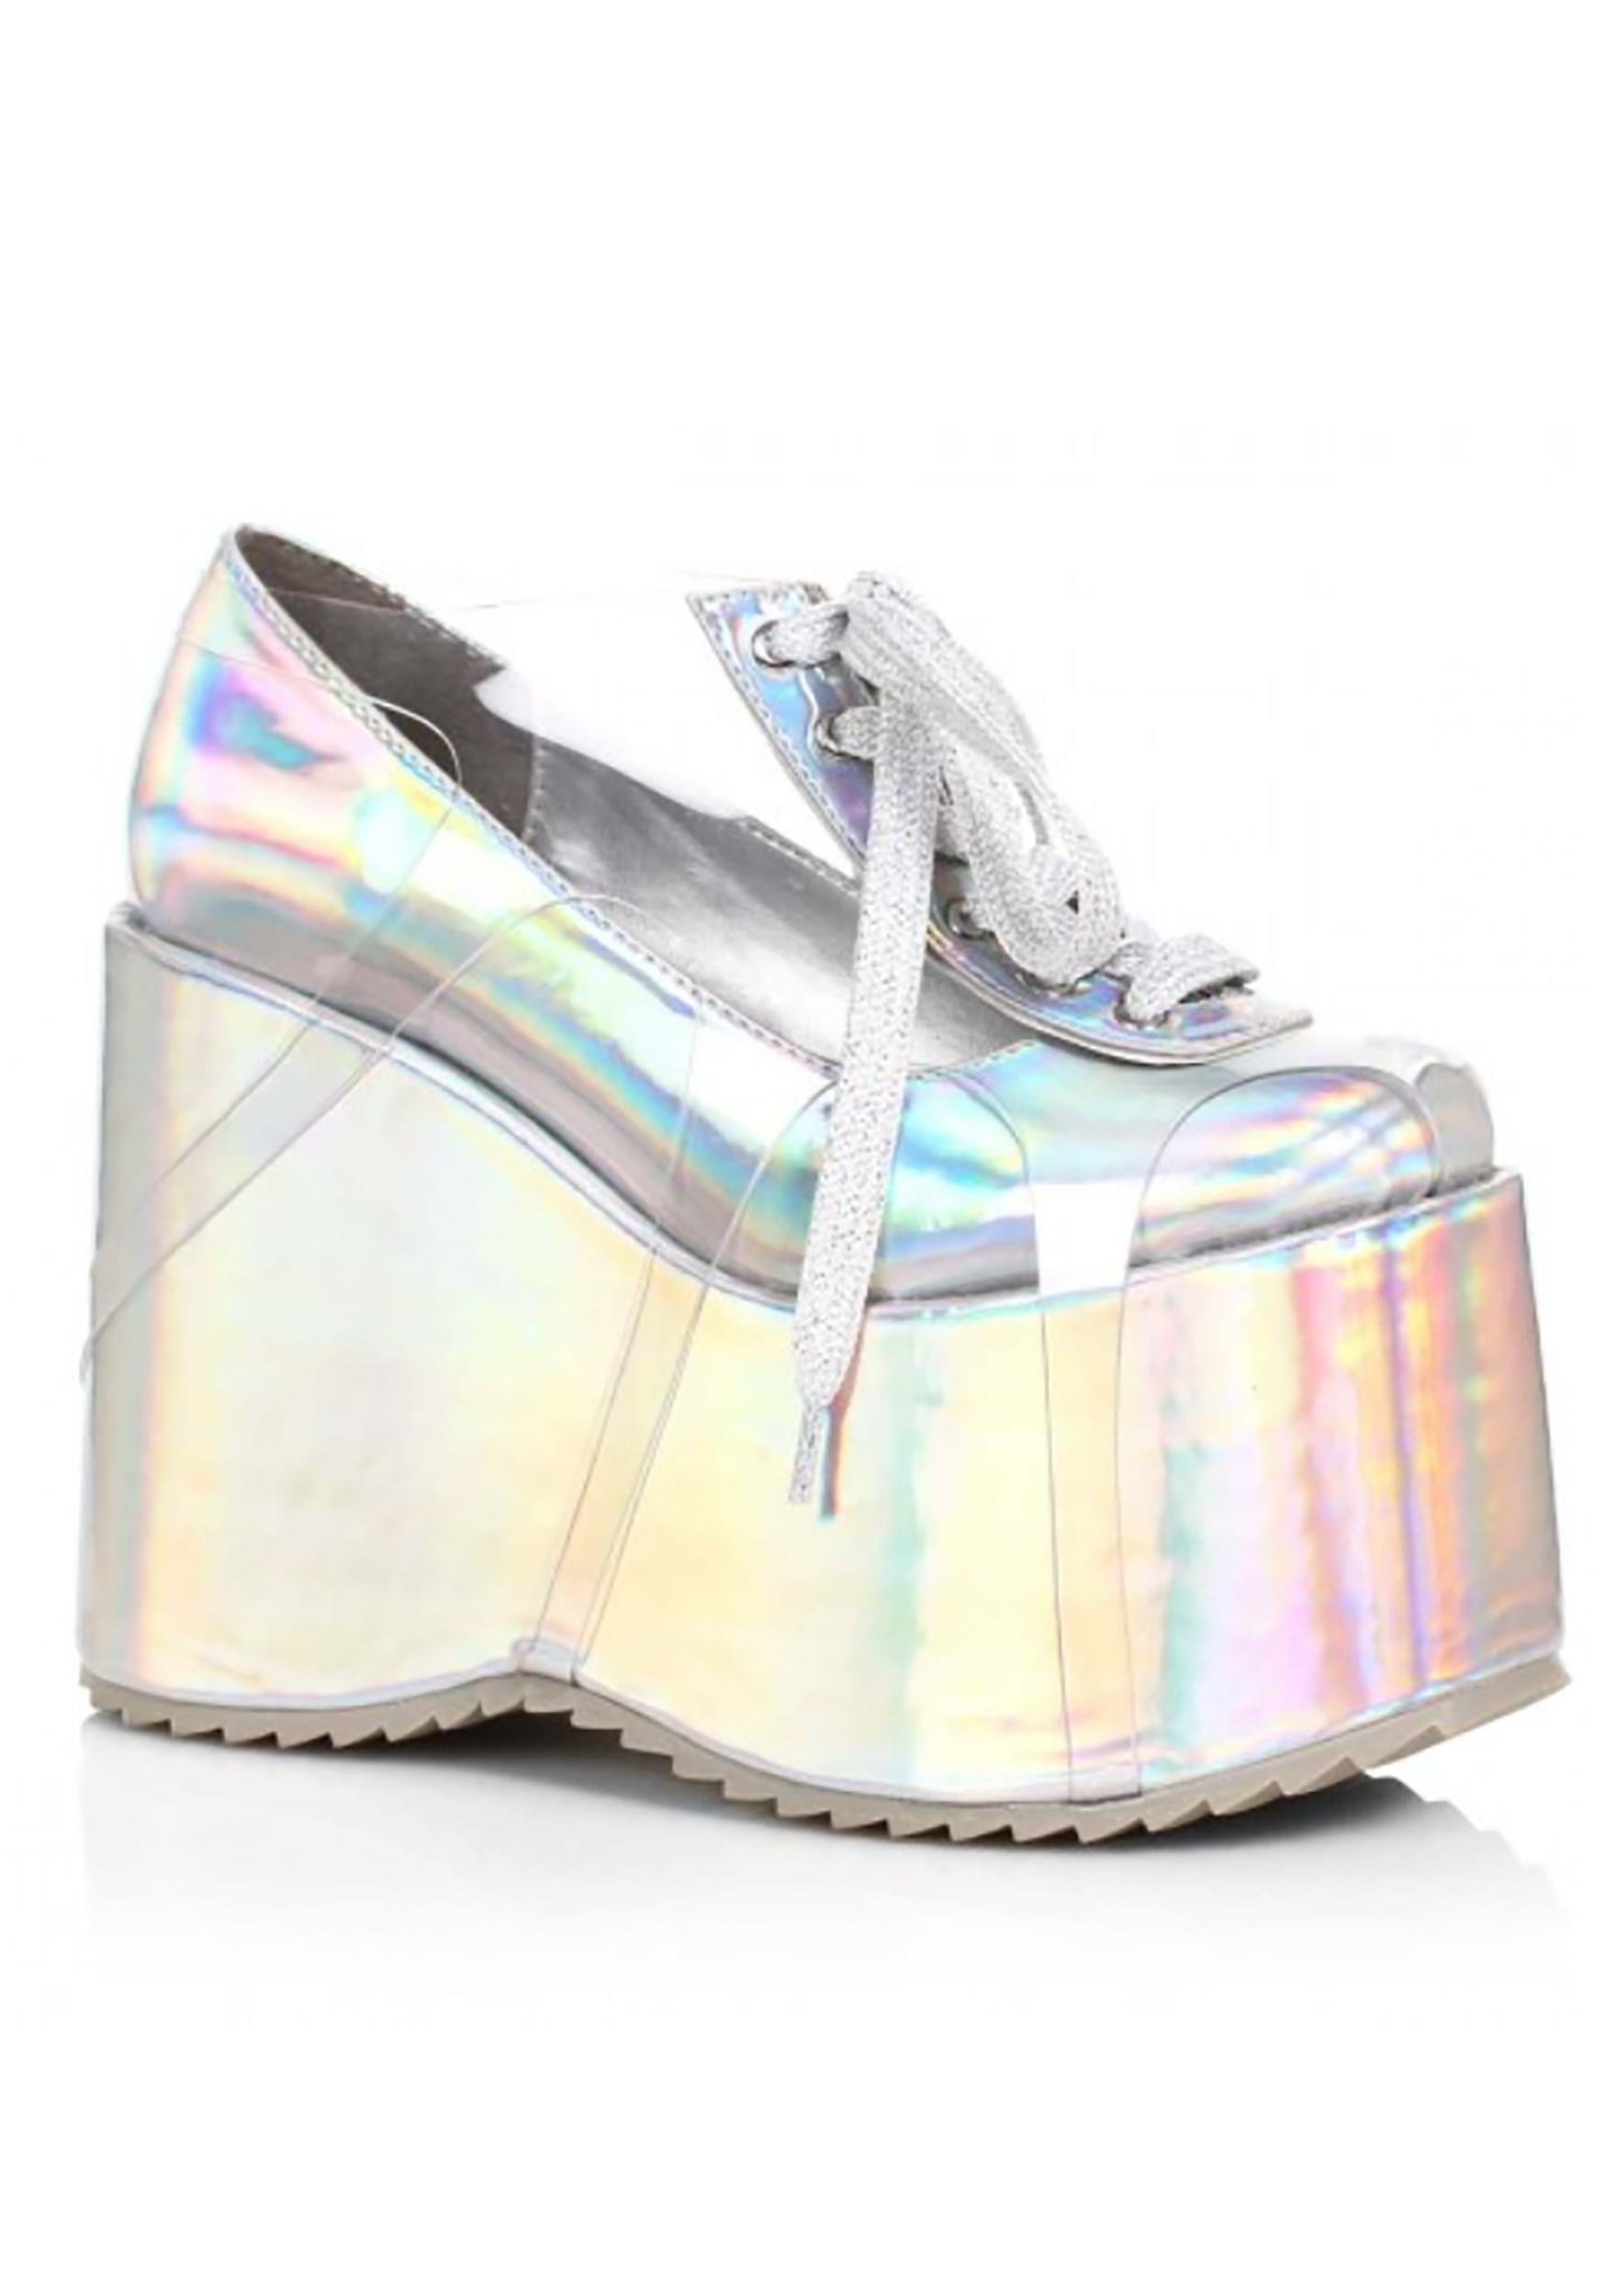 Zapatos de plataforma de hologramas para mujeres Multicolor